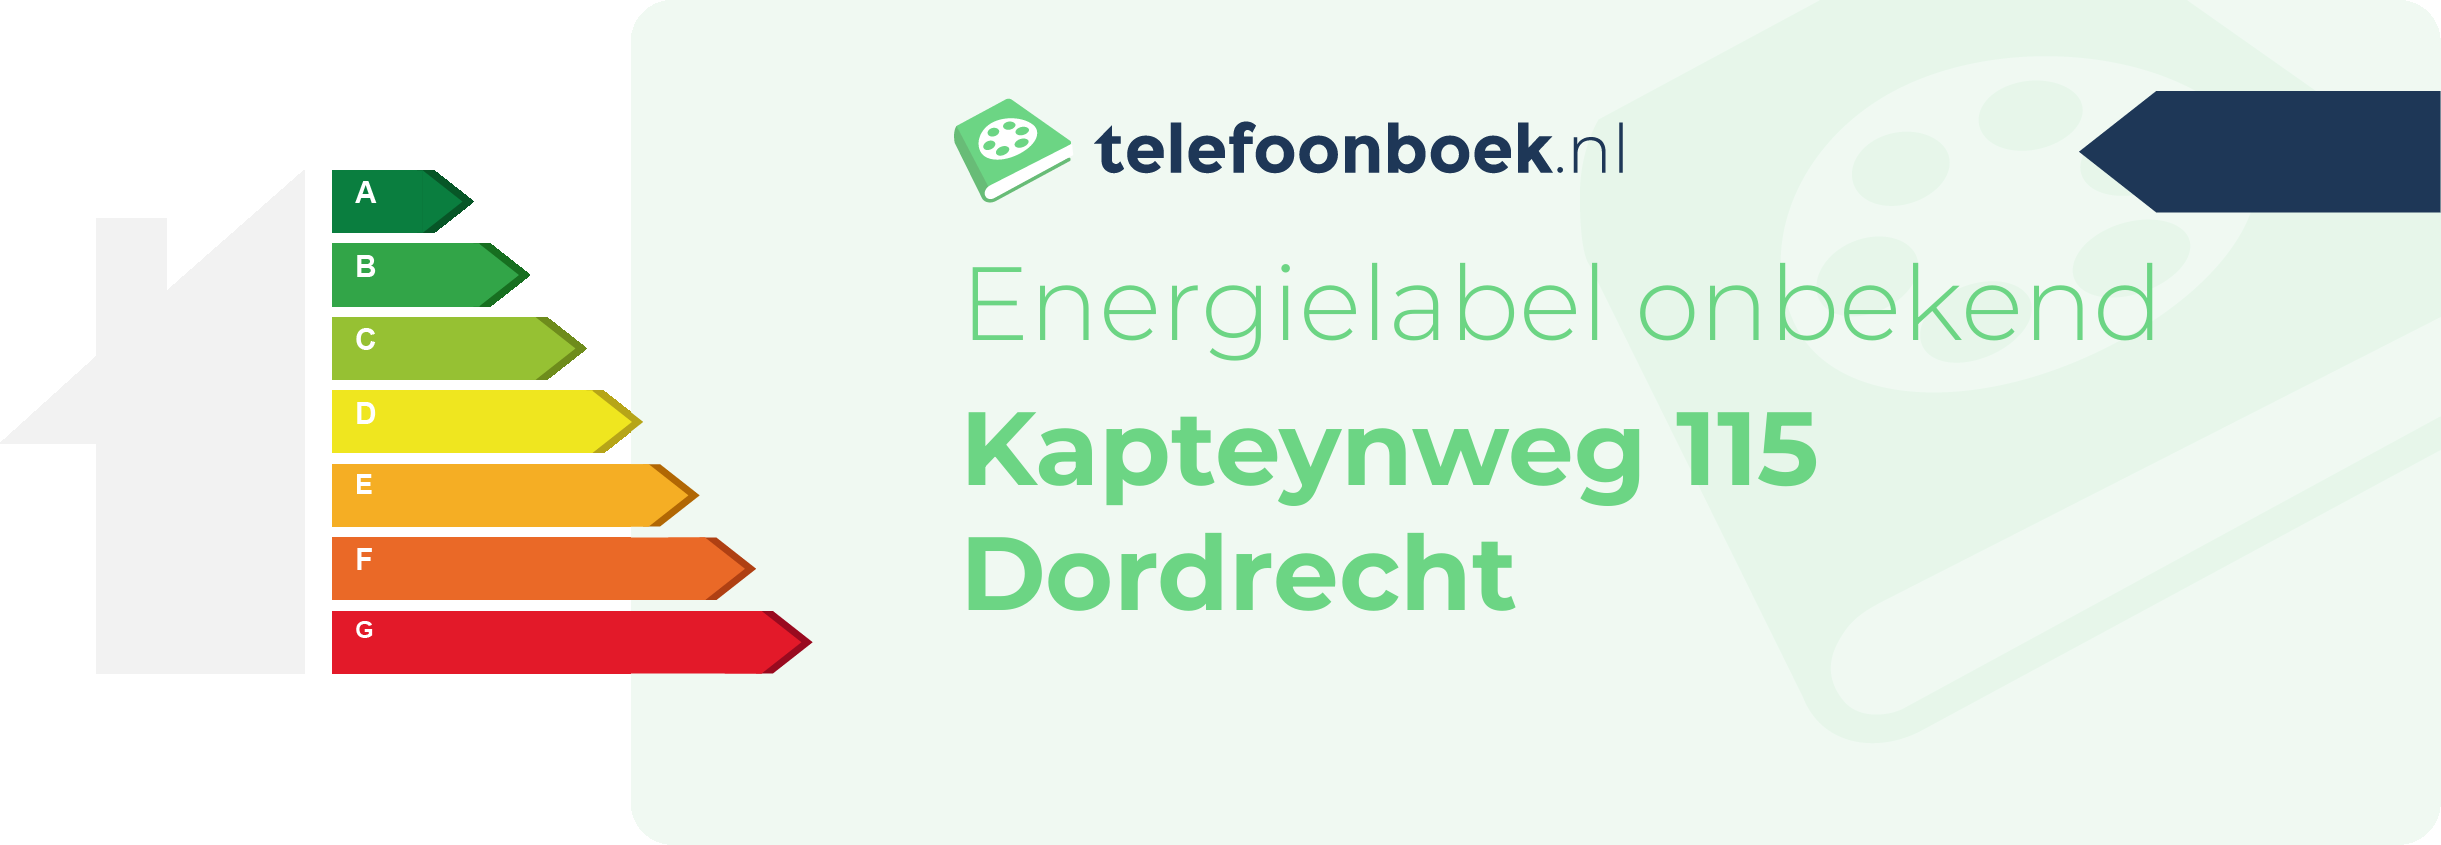 Energielabel Kapteynweg 115 Dordrecht